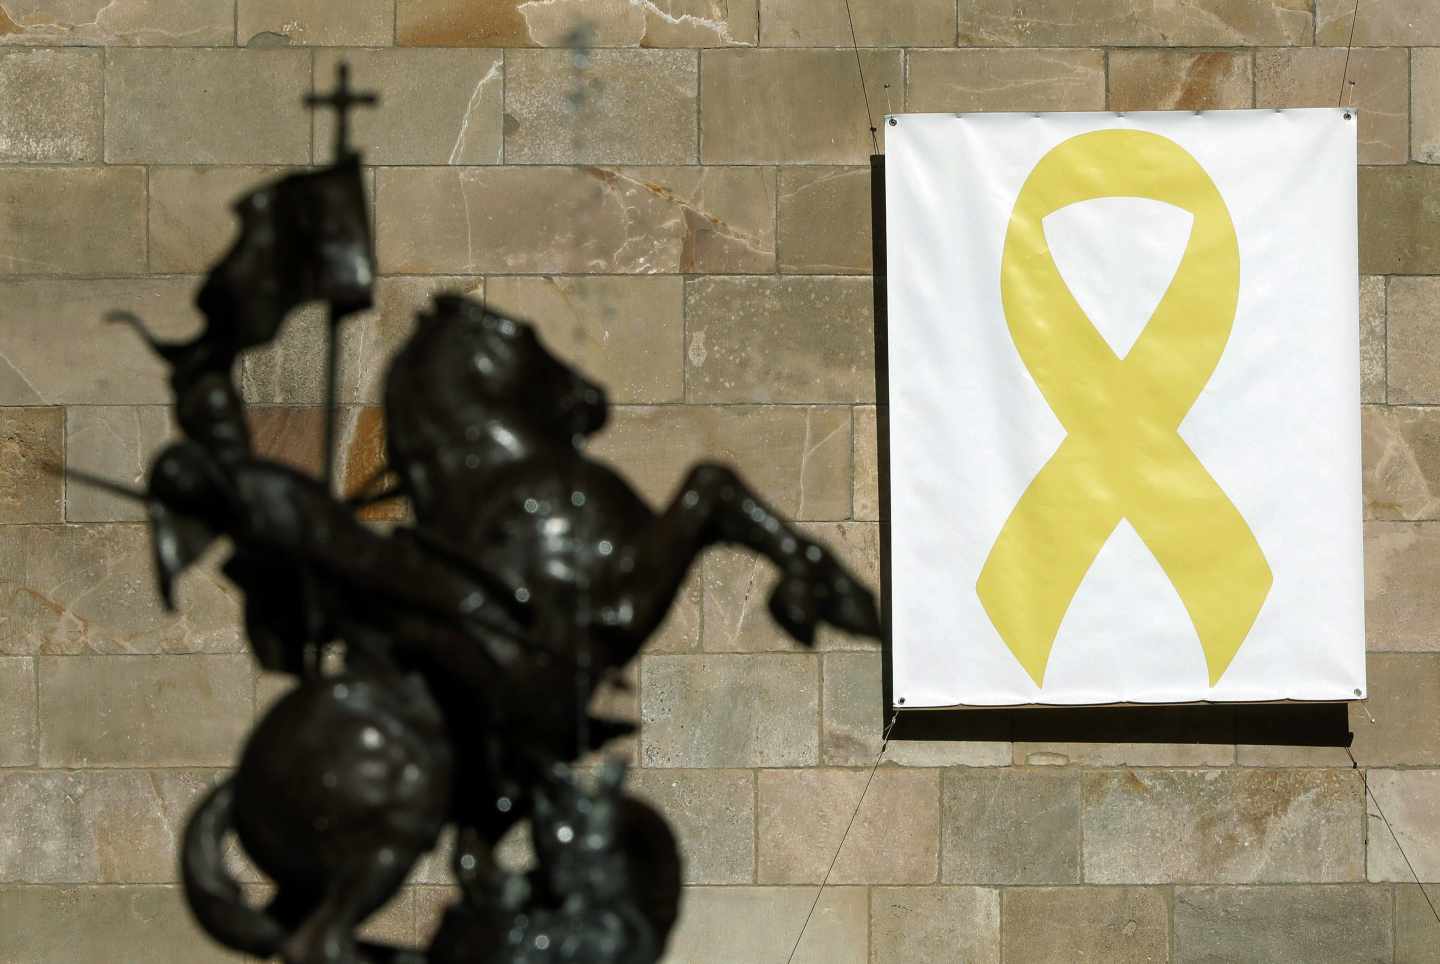 Vista del lazo amarillo colocado en el Pati dels Tarongers del Palau de la Generalitat.